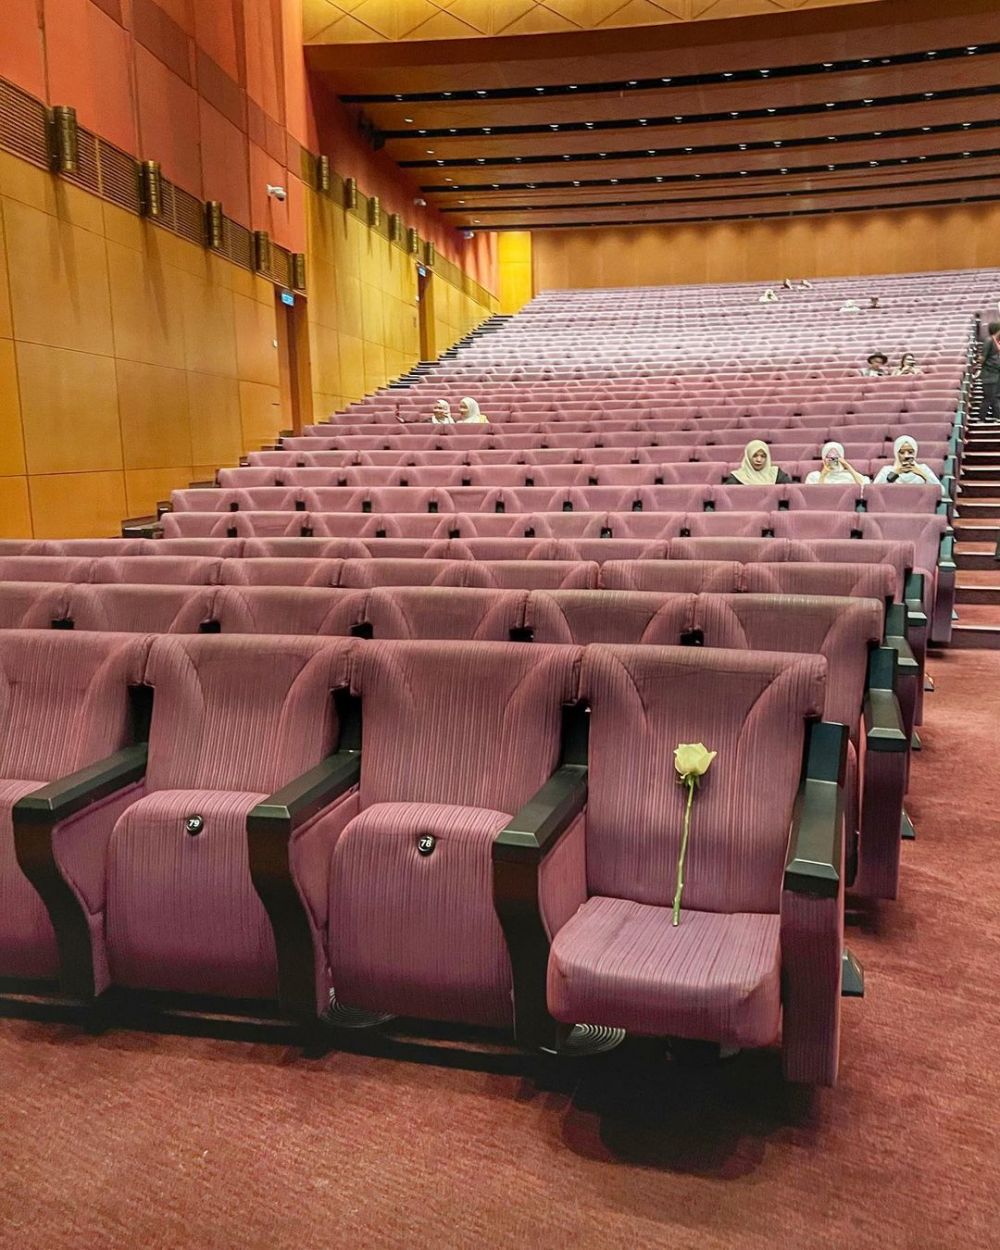 BCL sediakan kursi istimewa saat konser untuk kenang mendiang suami, warganet sebut kisah cinta sejati